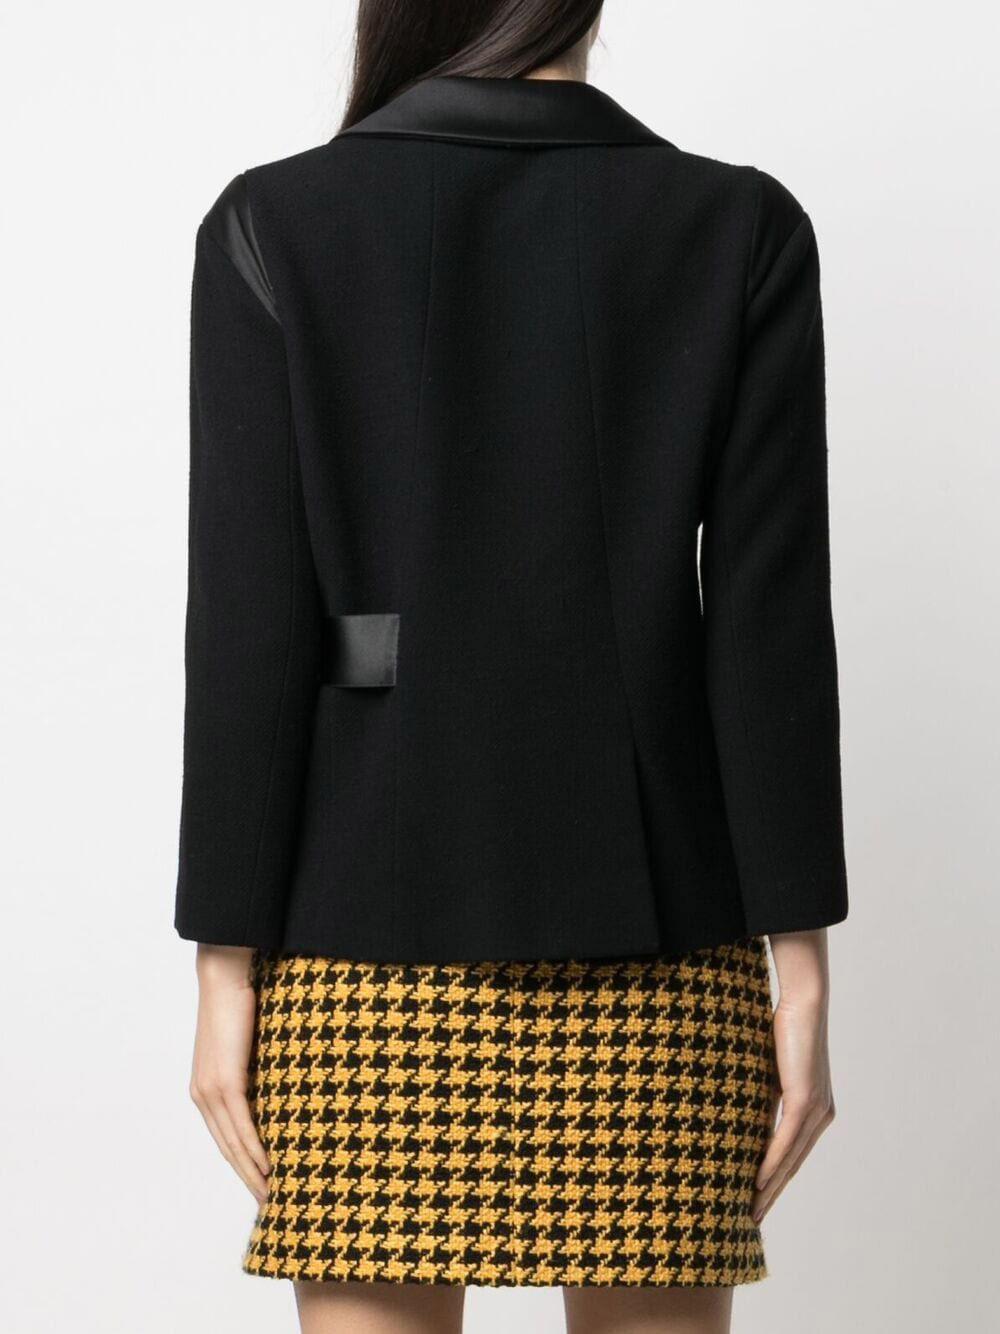 Chanel New Paris / London Runway Black Tweed Jacket For Sale 2